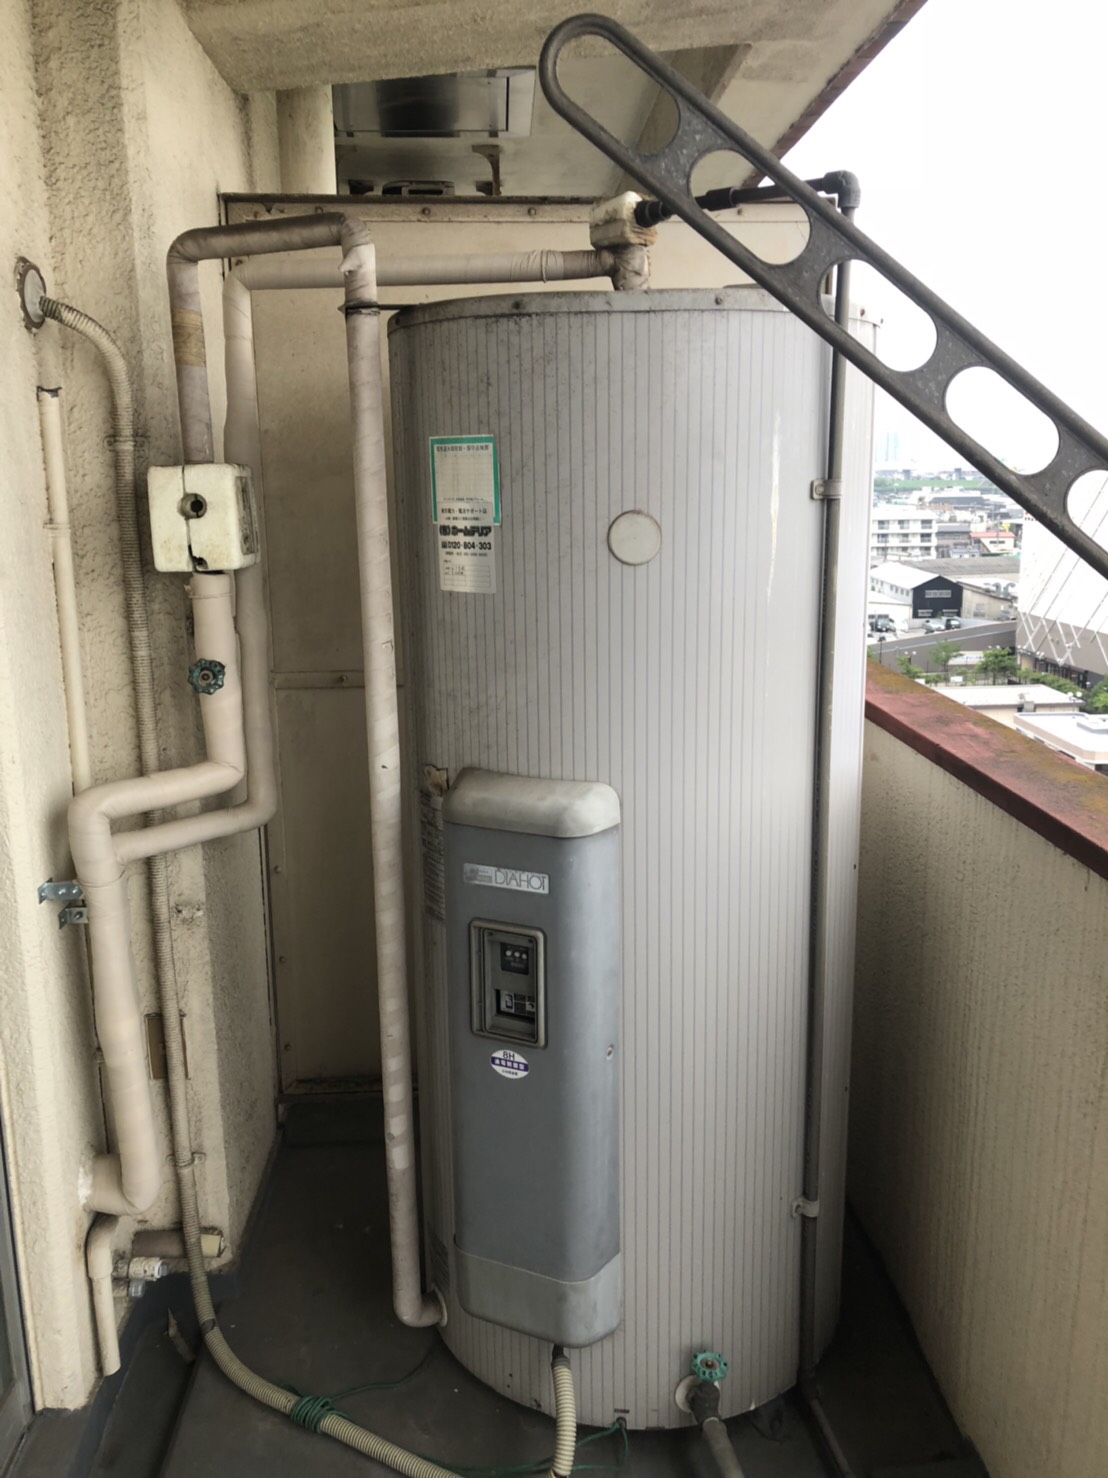 墨田区 電気温水器の交換 取替 工事費込み価格 270 000 給湯器駆けつけ隊ミズテック